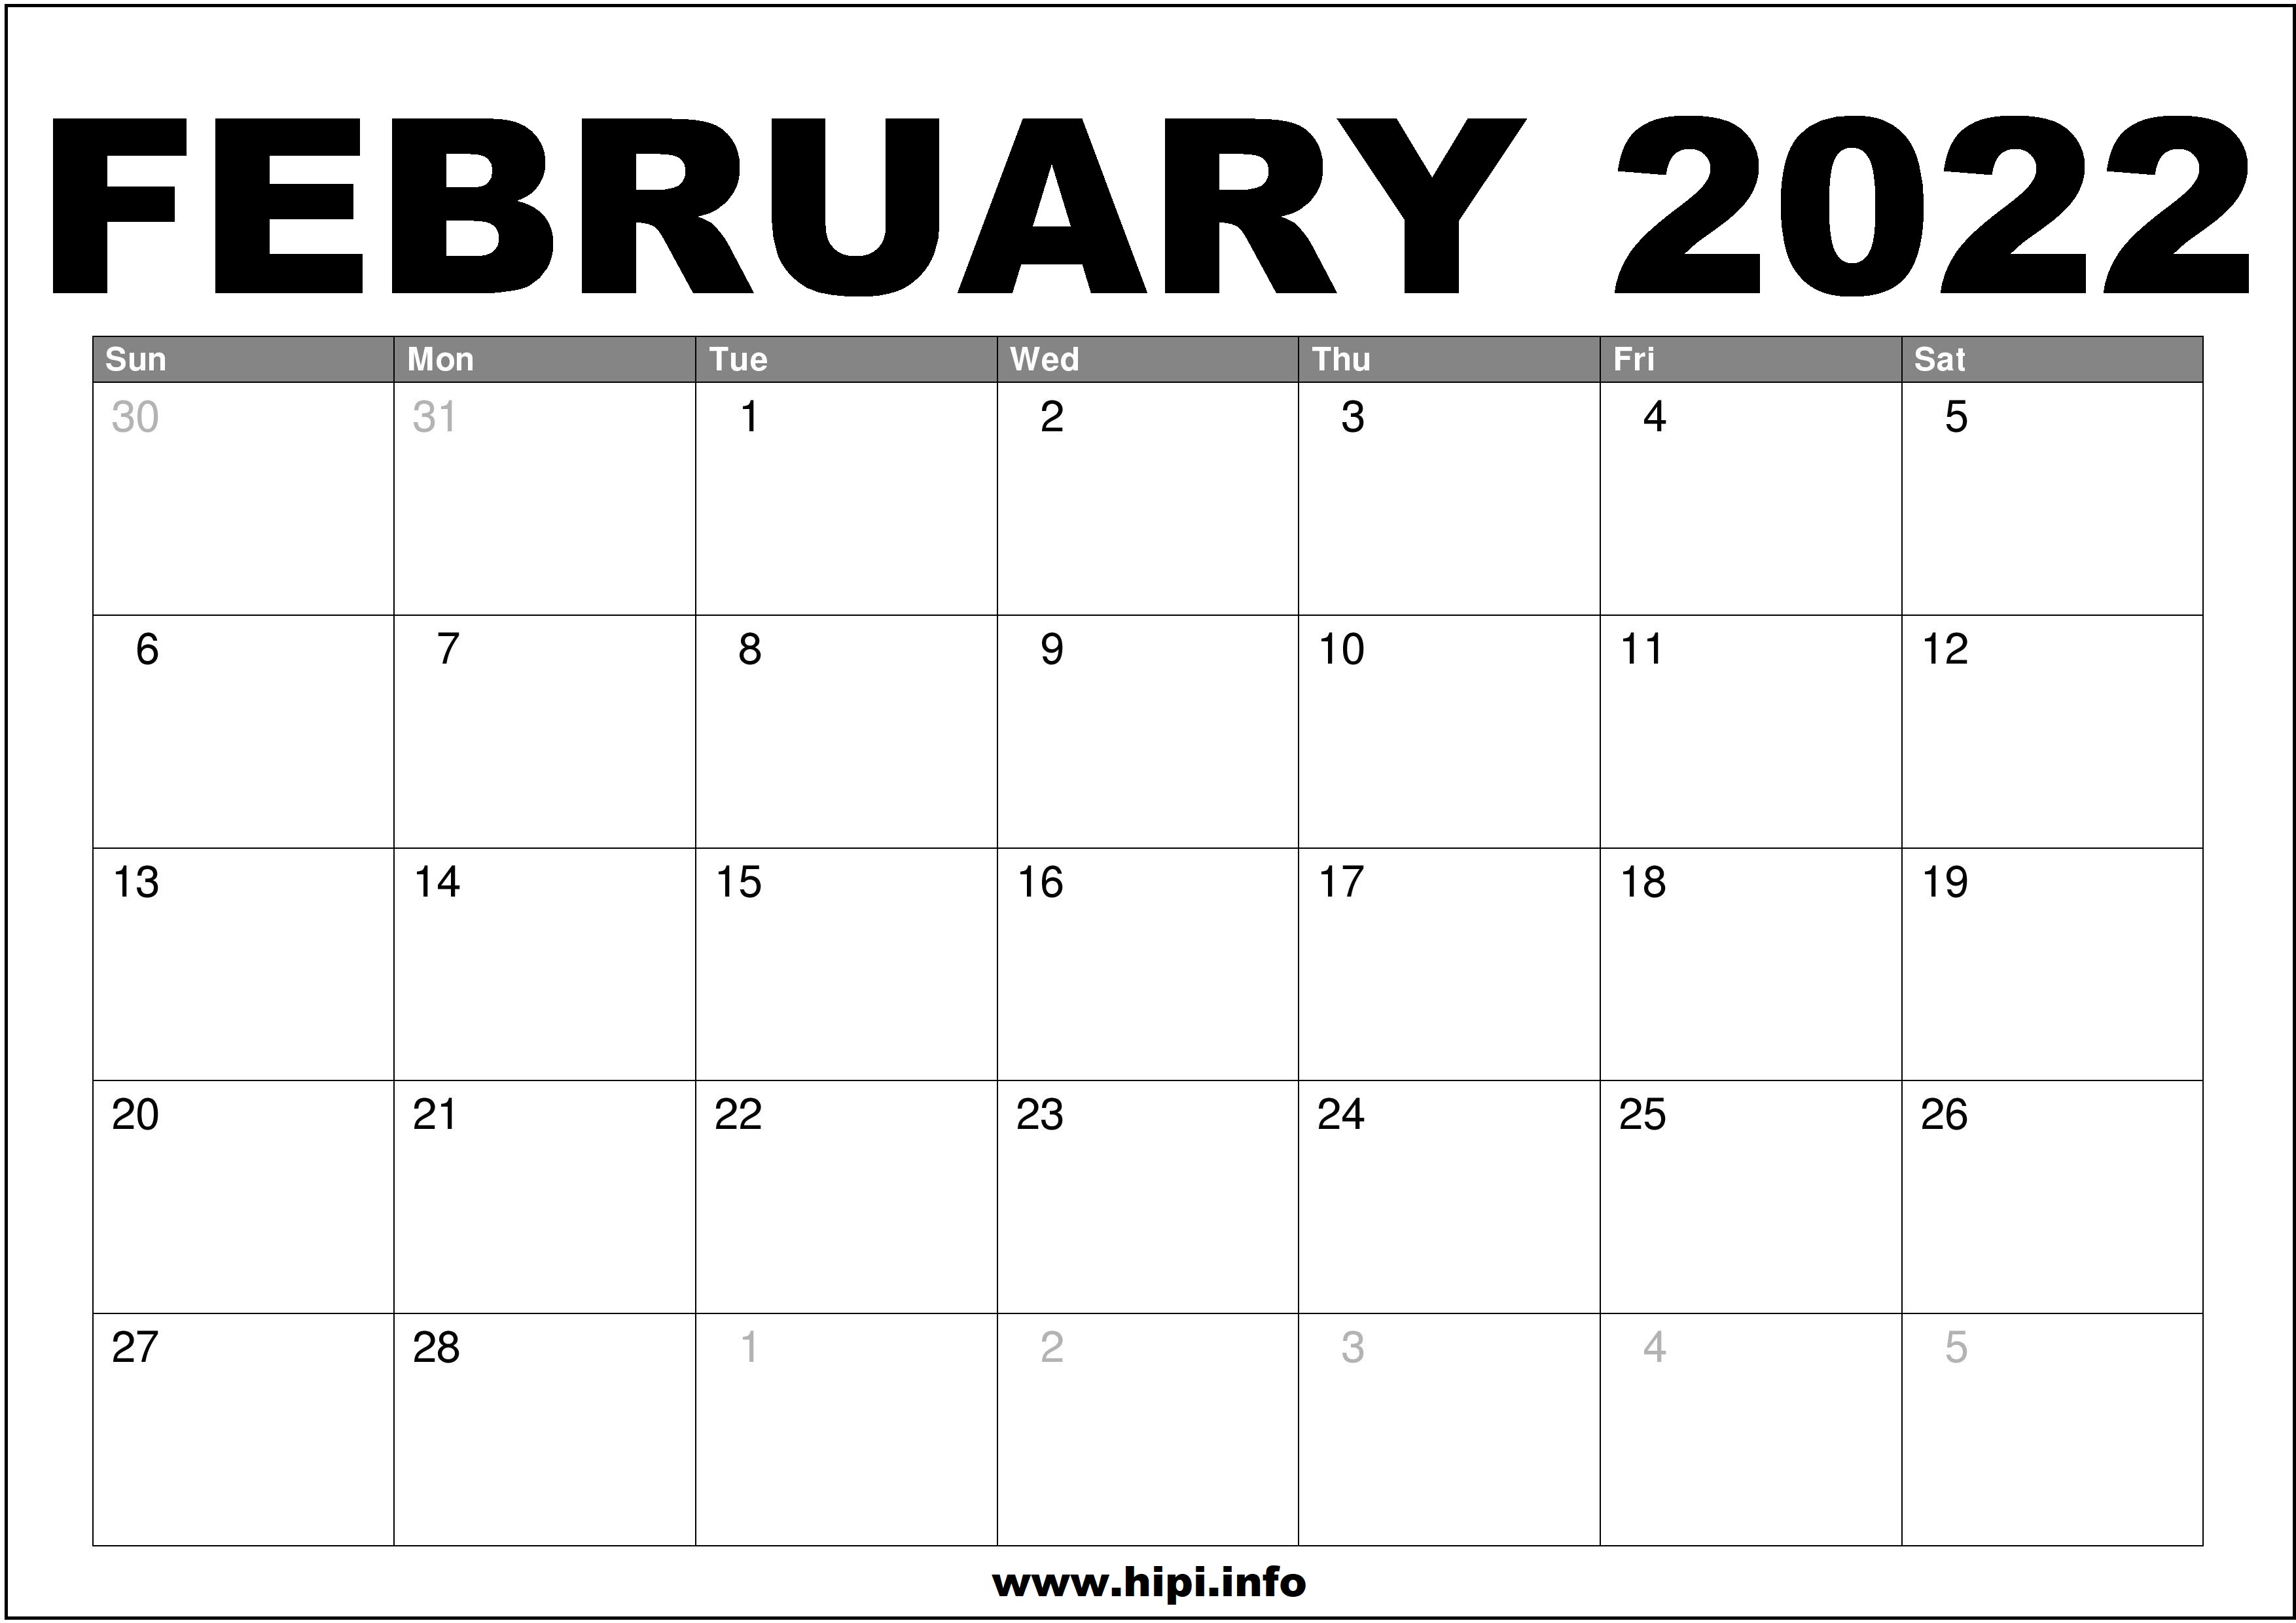 Feb 2022 Calendar Printable Free February 2022 Calendar Printable Free - Hipi.info | Calendars Printable Free